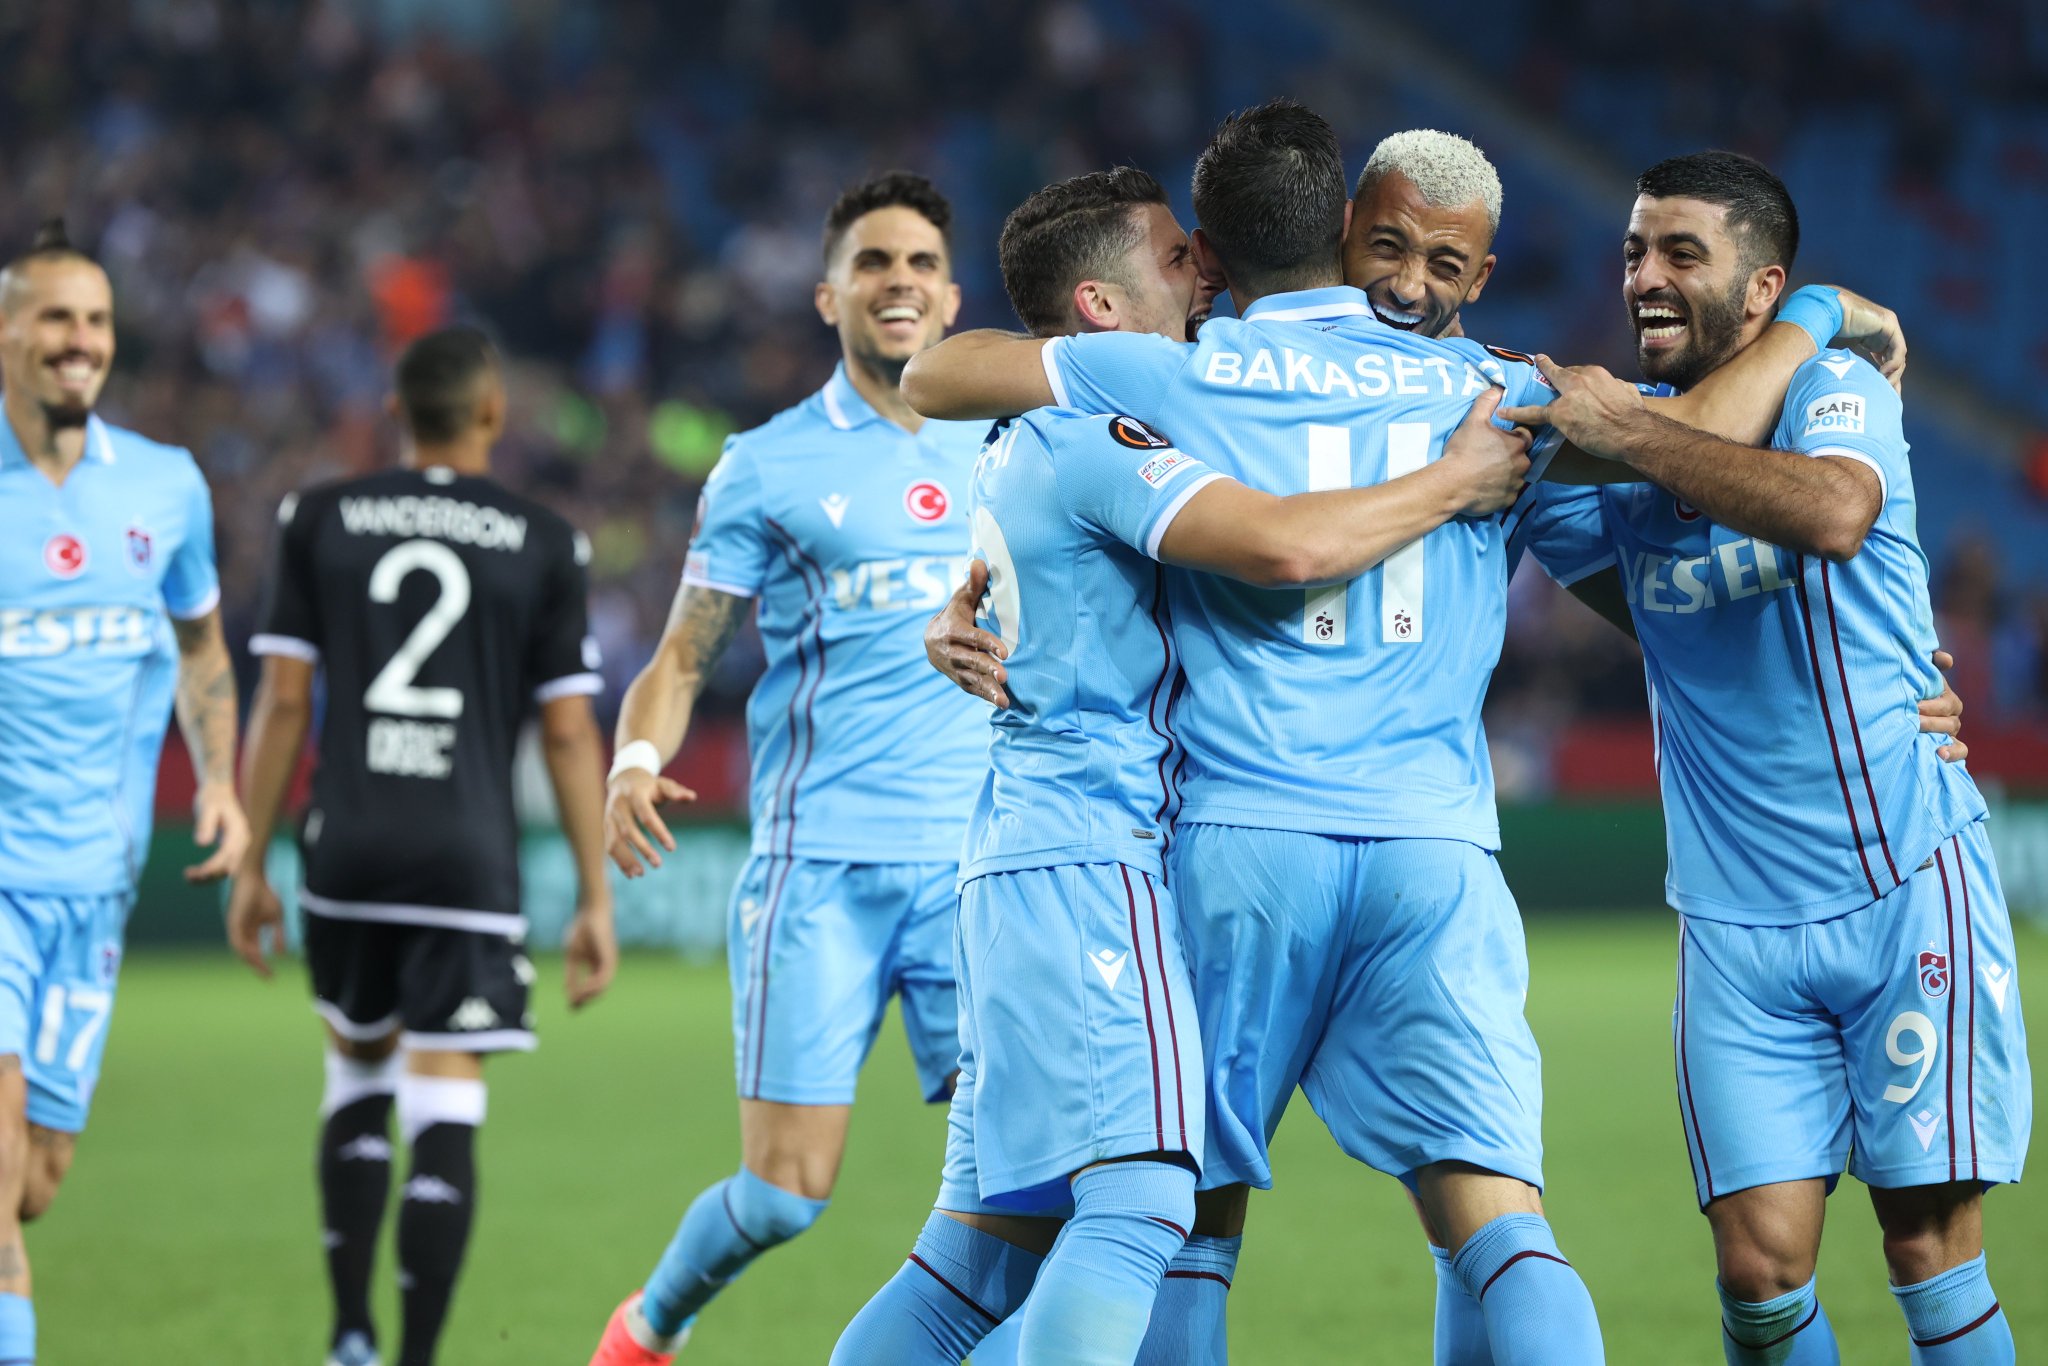 Europa League : L’AS Monaco prend une gifle sur la pelouse de Trabzonspor